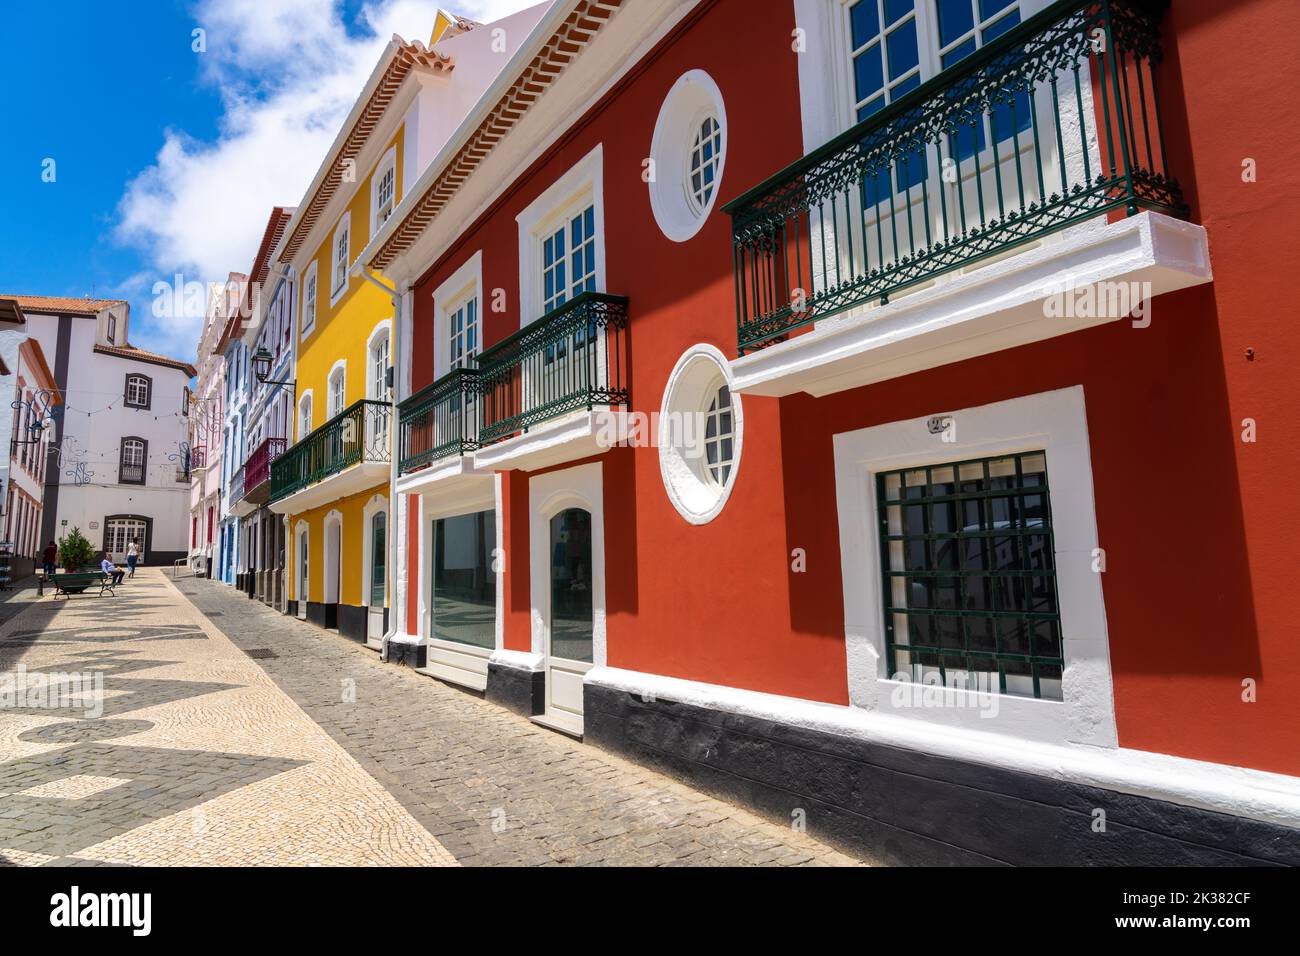 Le colorate facciate color pastello degli edifici in stile neoclassico lungo la passerella pedonale della Rua da Esperanca terminano al rosa Teatro Angrense, un teatro d'arte dello spettacolo ad Angra do Heroismo, Isola di Terceira, Azzorre, Portogallo. Foto Stock